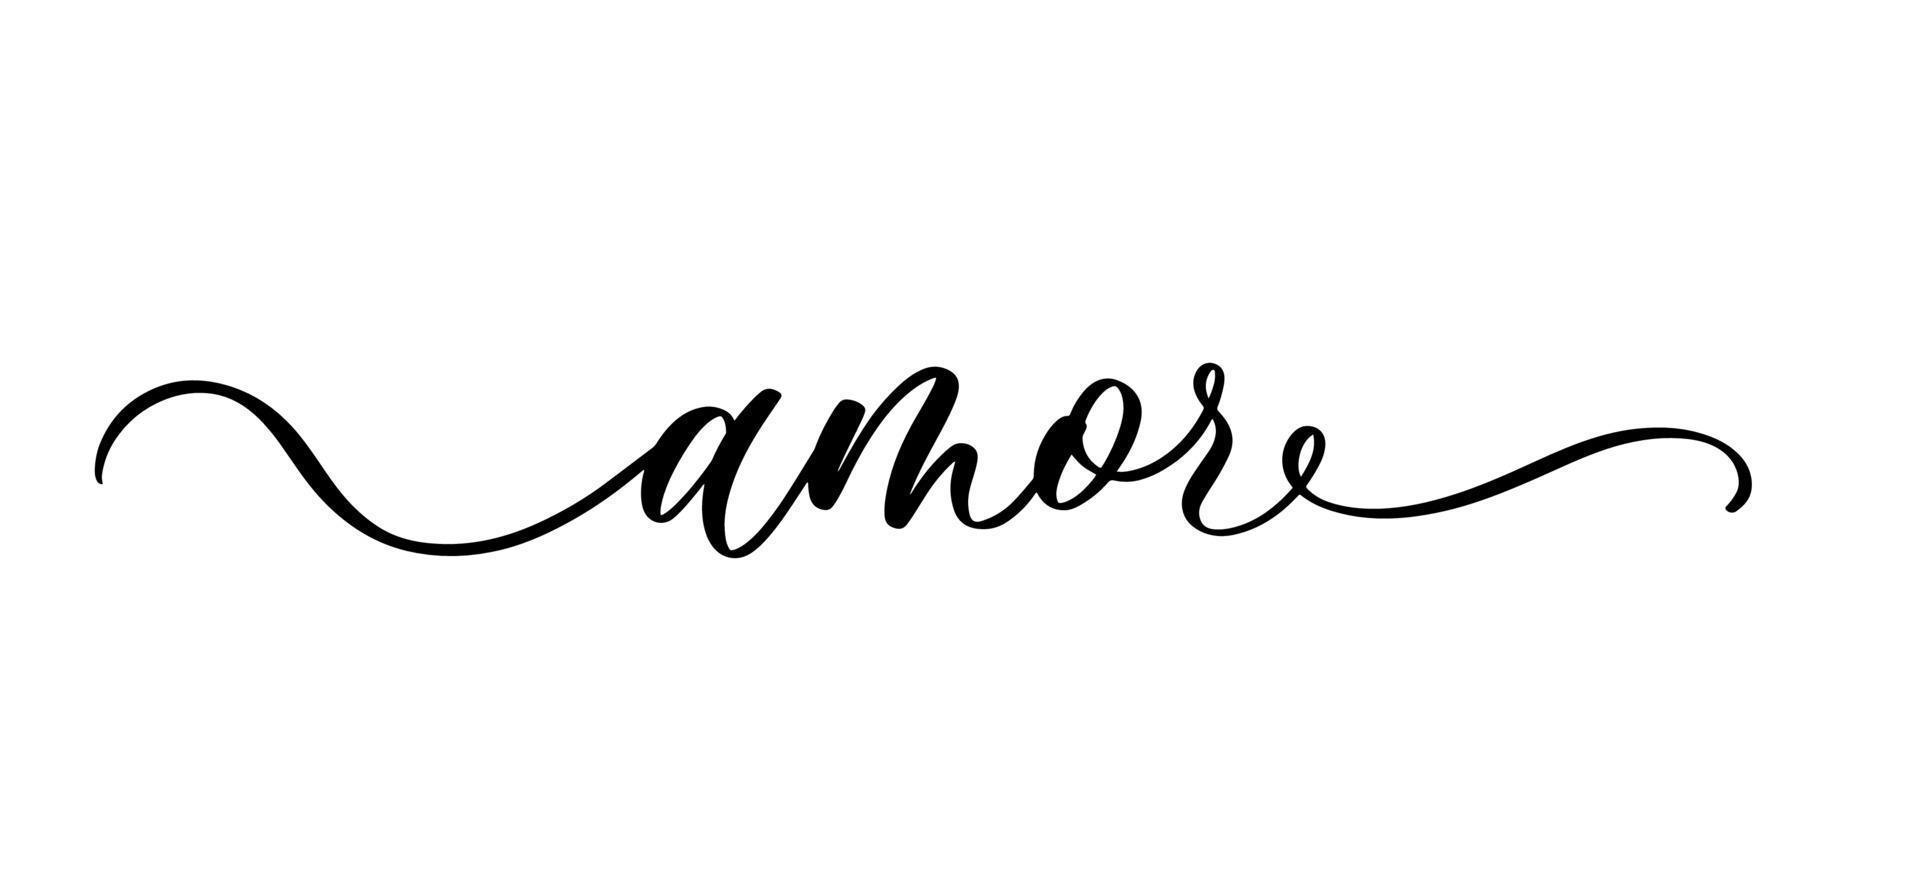 inscription de lettrage amor en espagnol. inscription calligraphique de vecteur avec une ligne lisse.